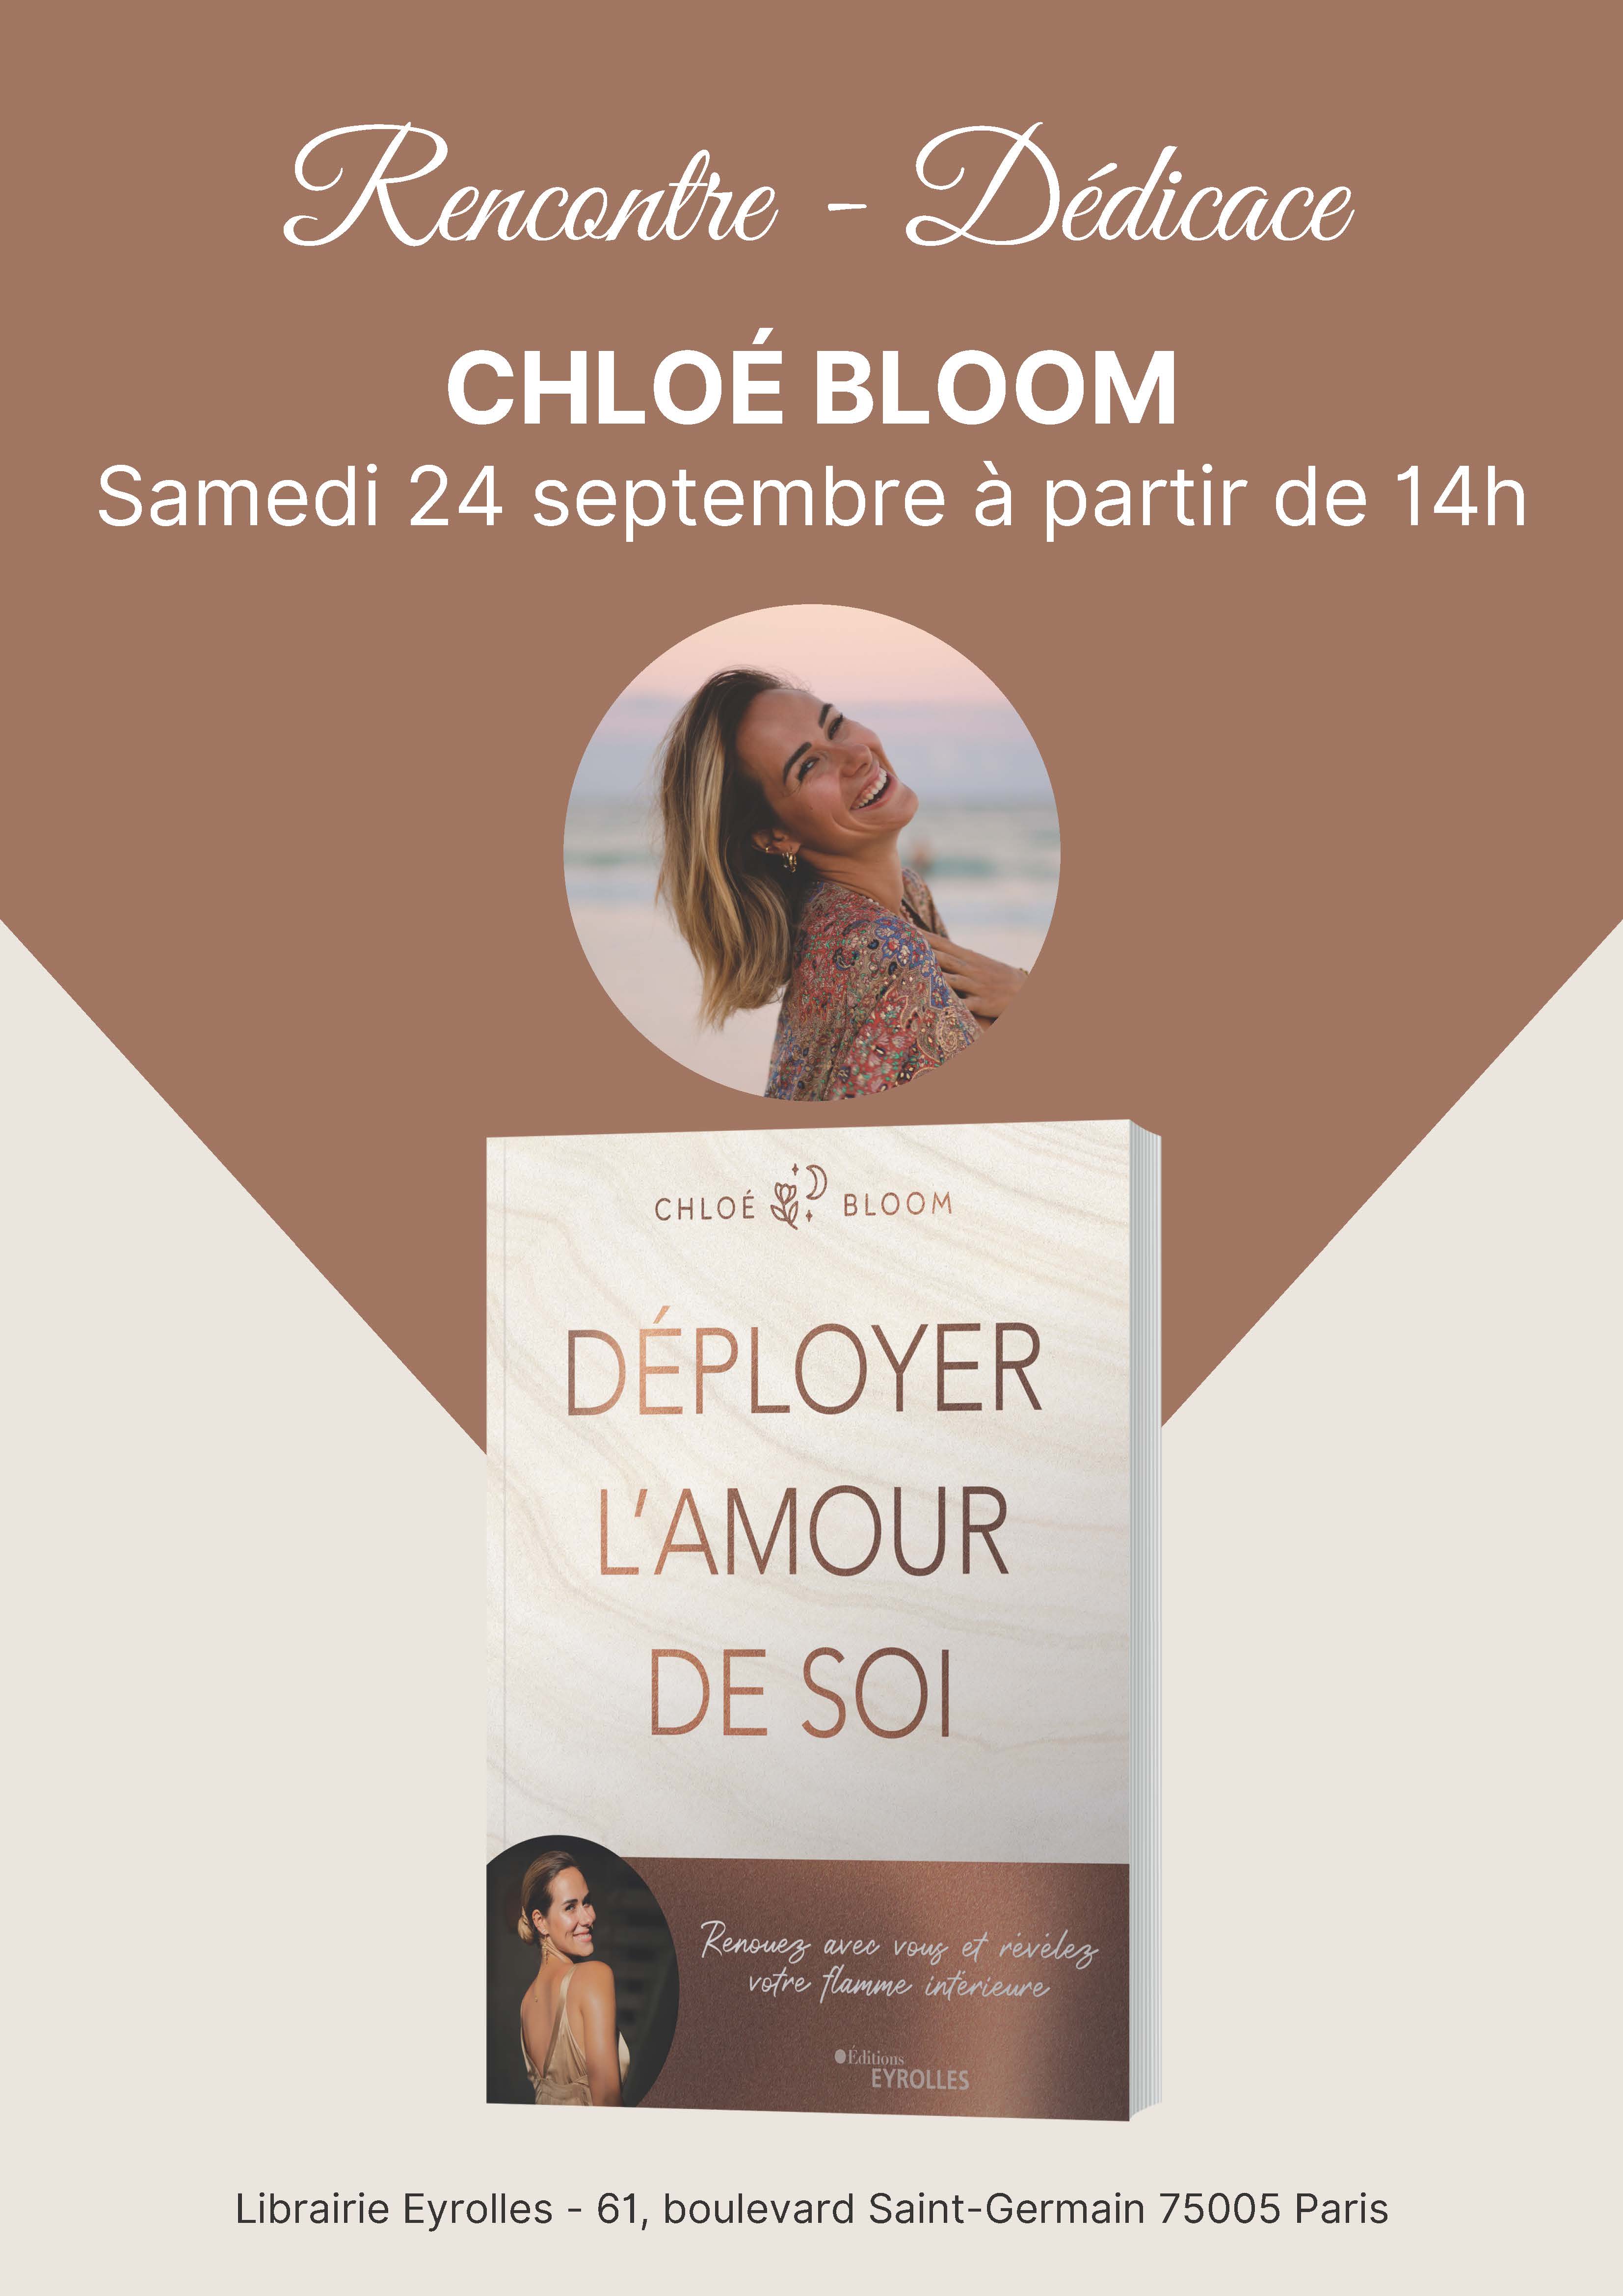 Rencontrez Chloé Bloom à Paris